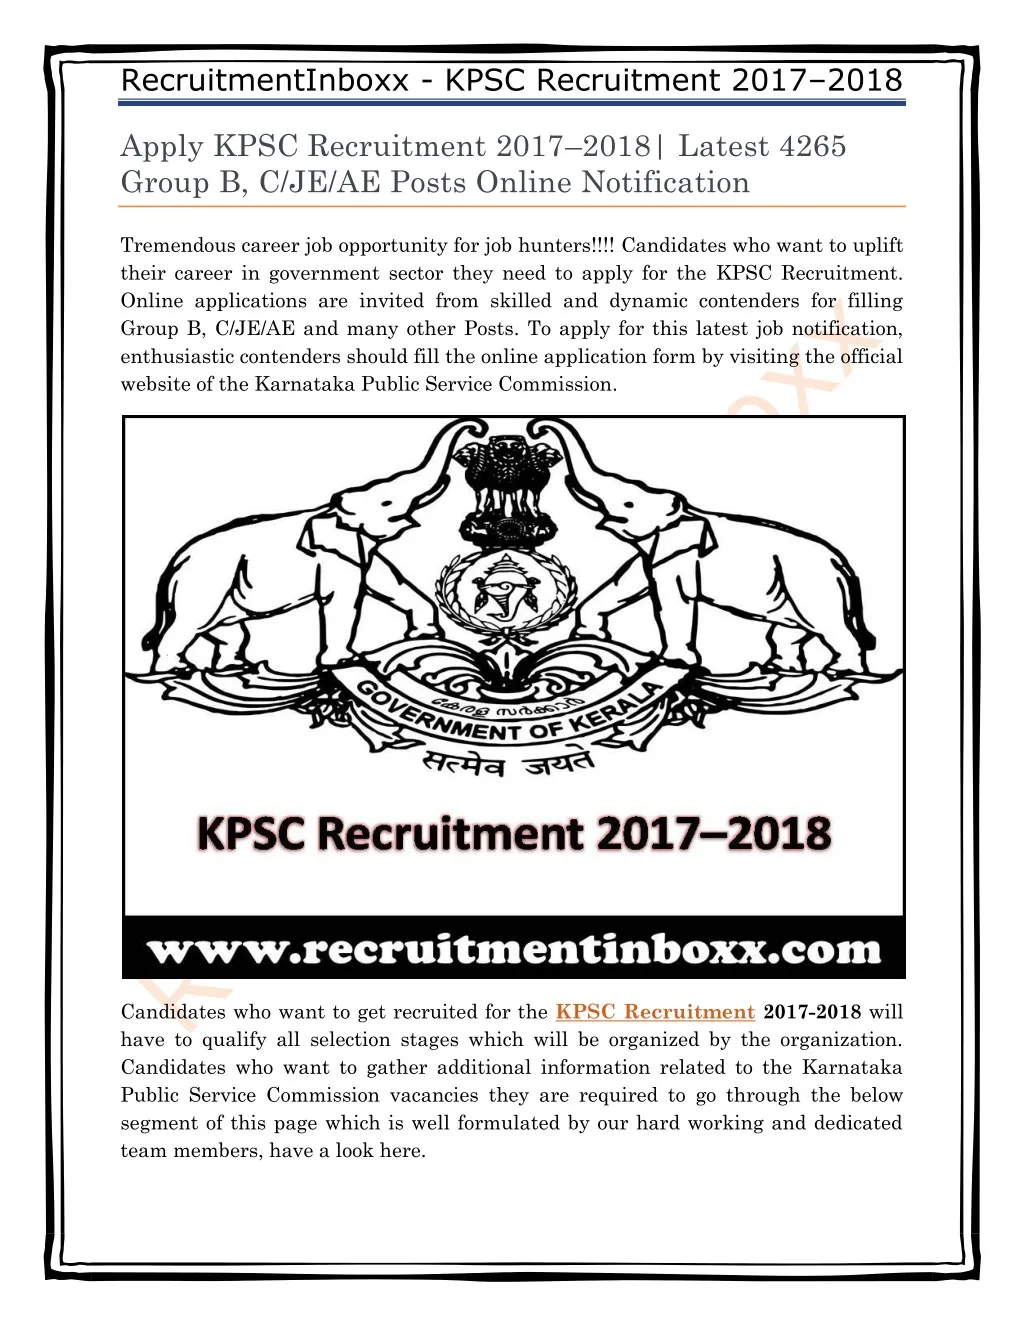 recruitmentinboxx kpsc recruitment 2017 2018